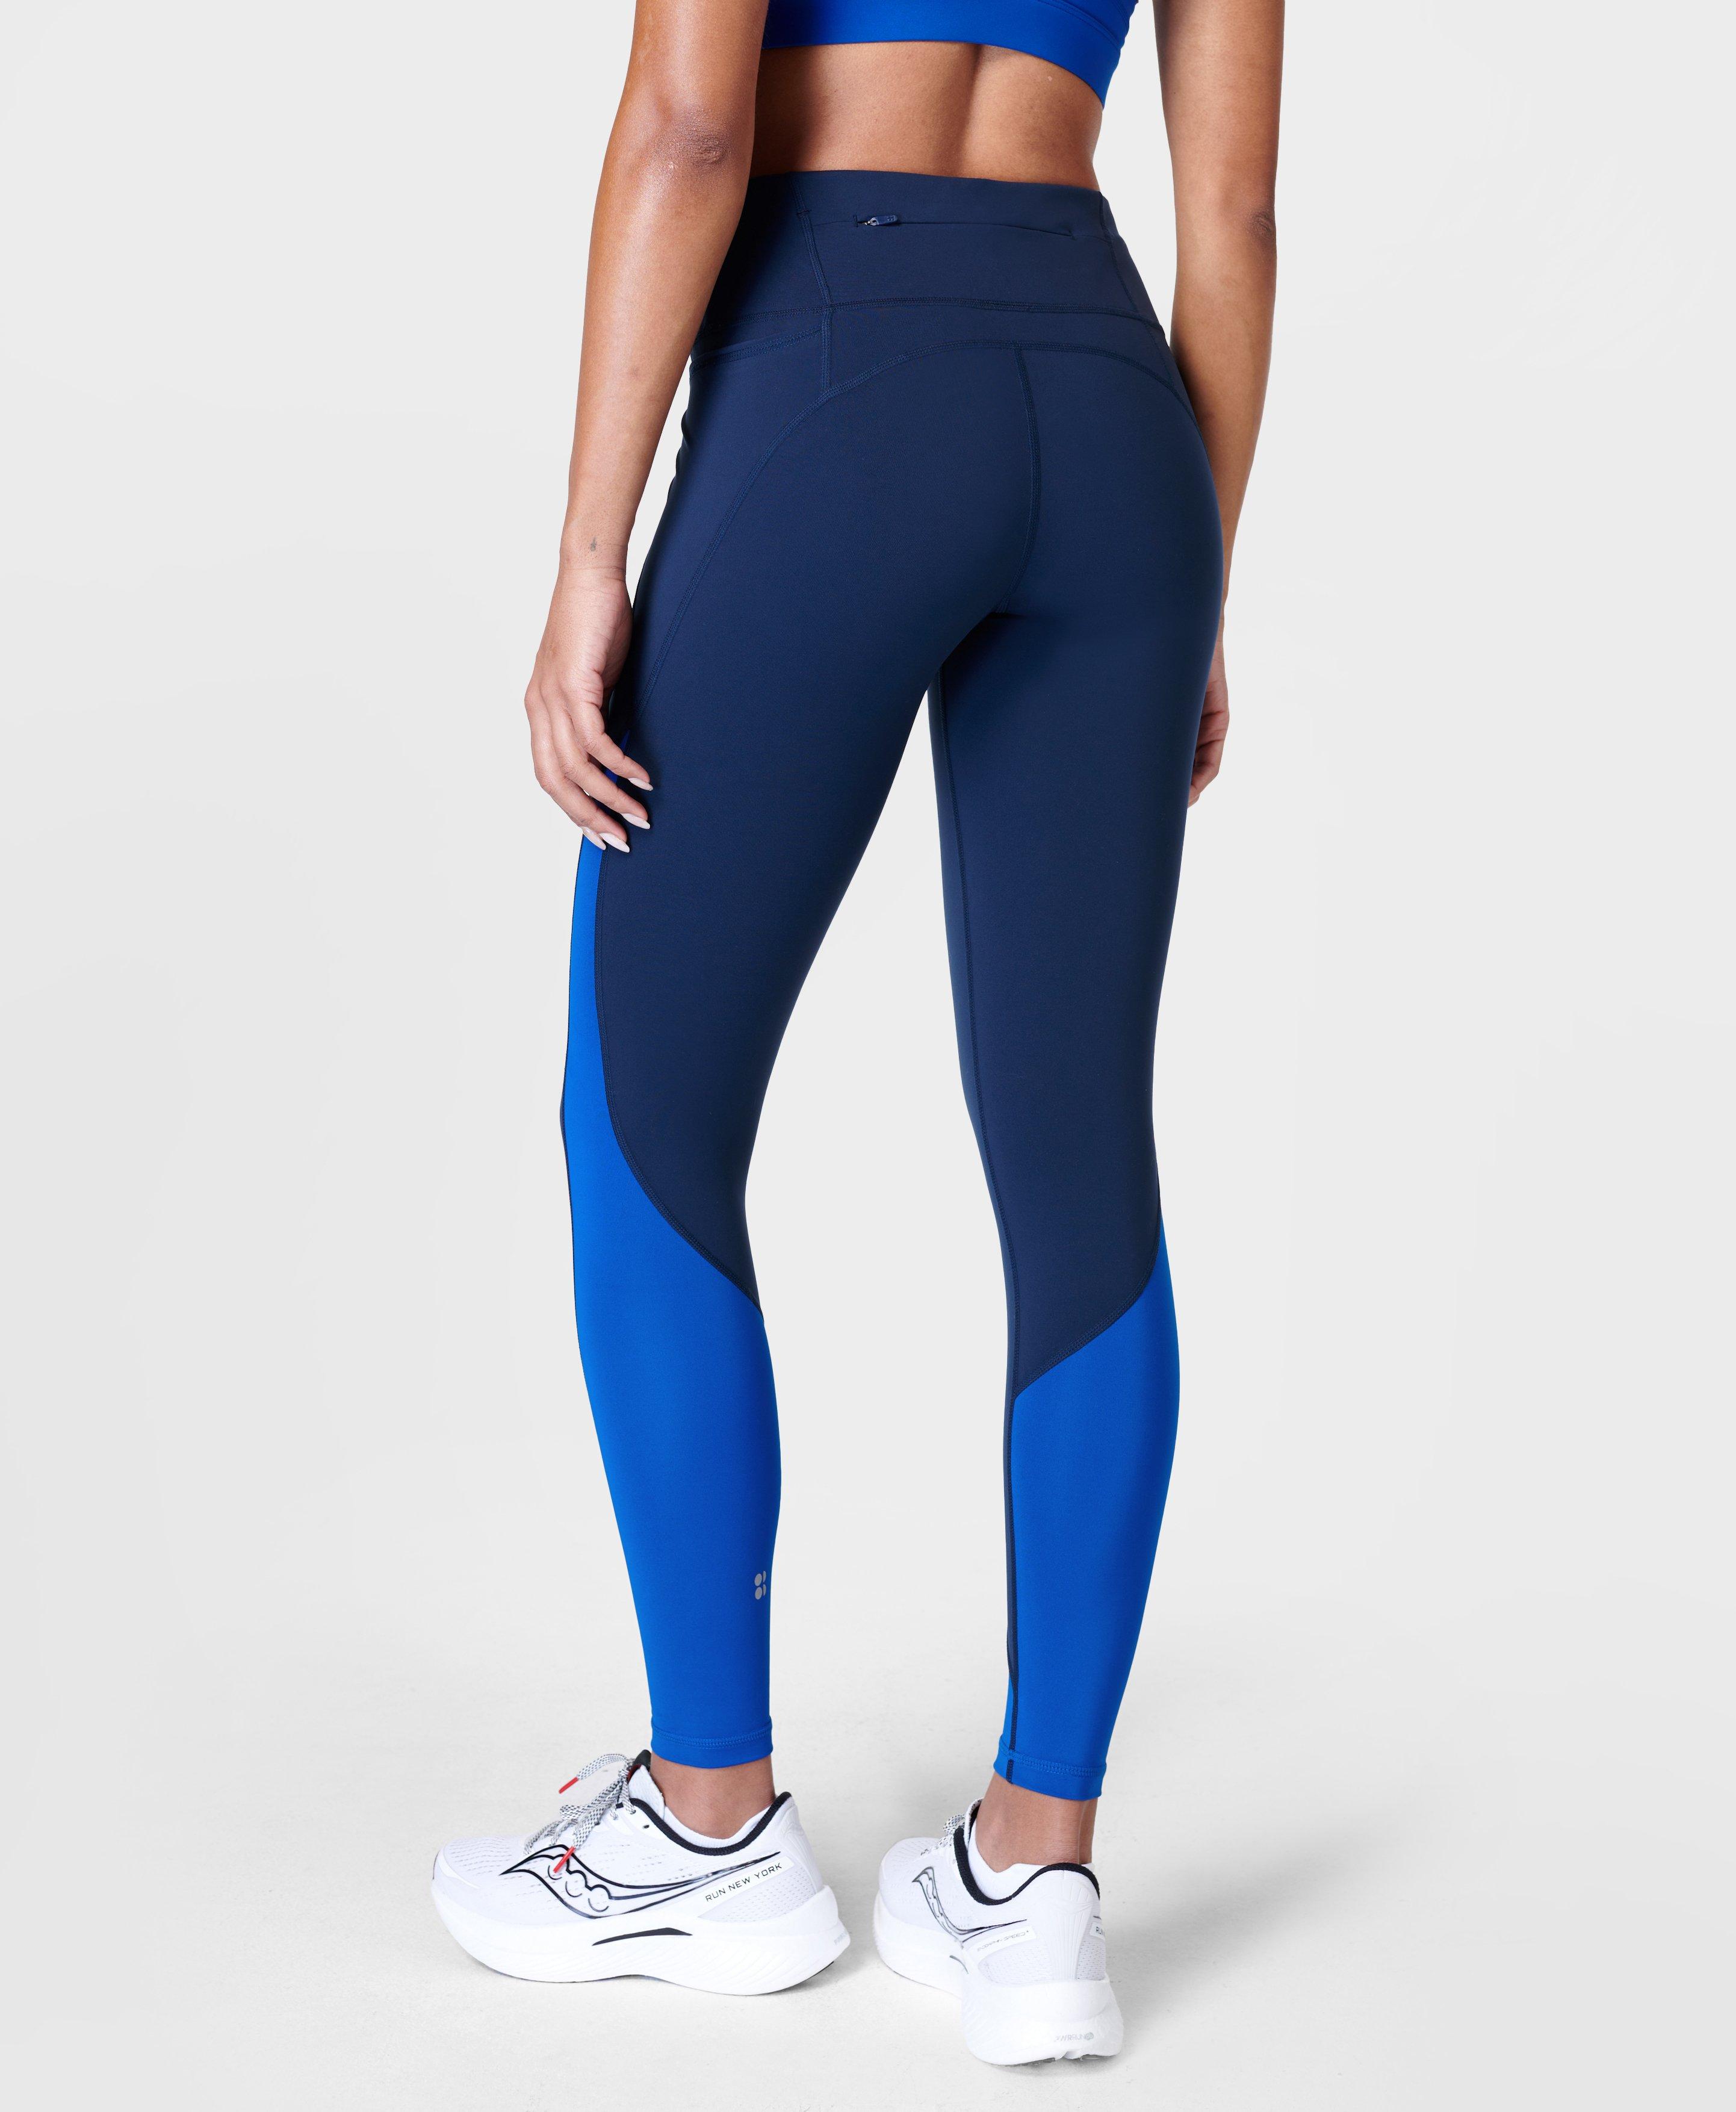 Power 7/8 Workout Colour Curve Leggings - Navy Blue, Women's Leggings